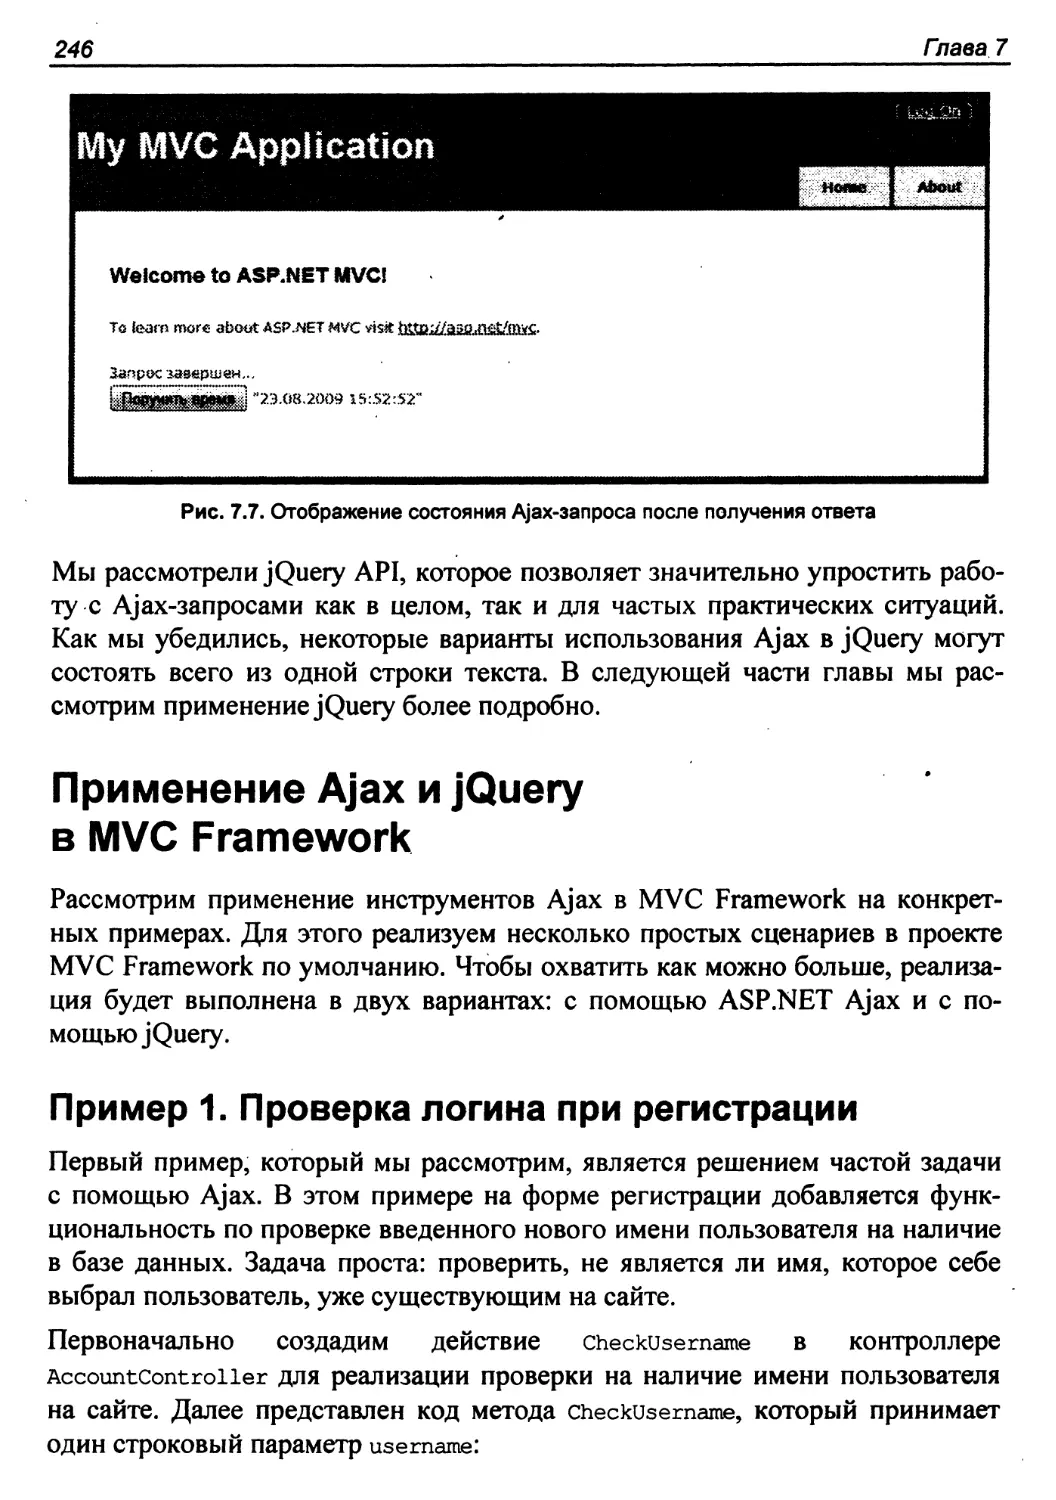 Применение Ajax и jQuery в MVC Framework